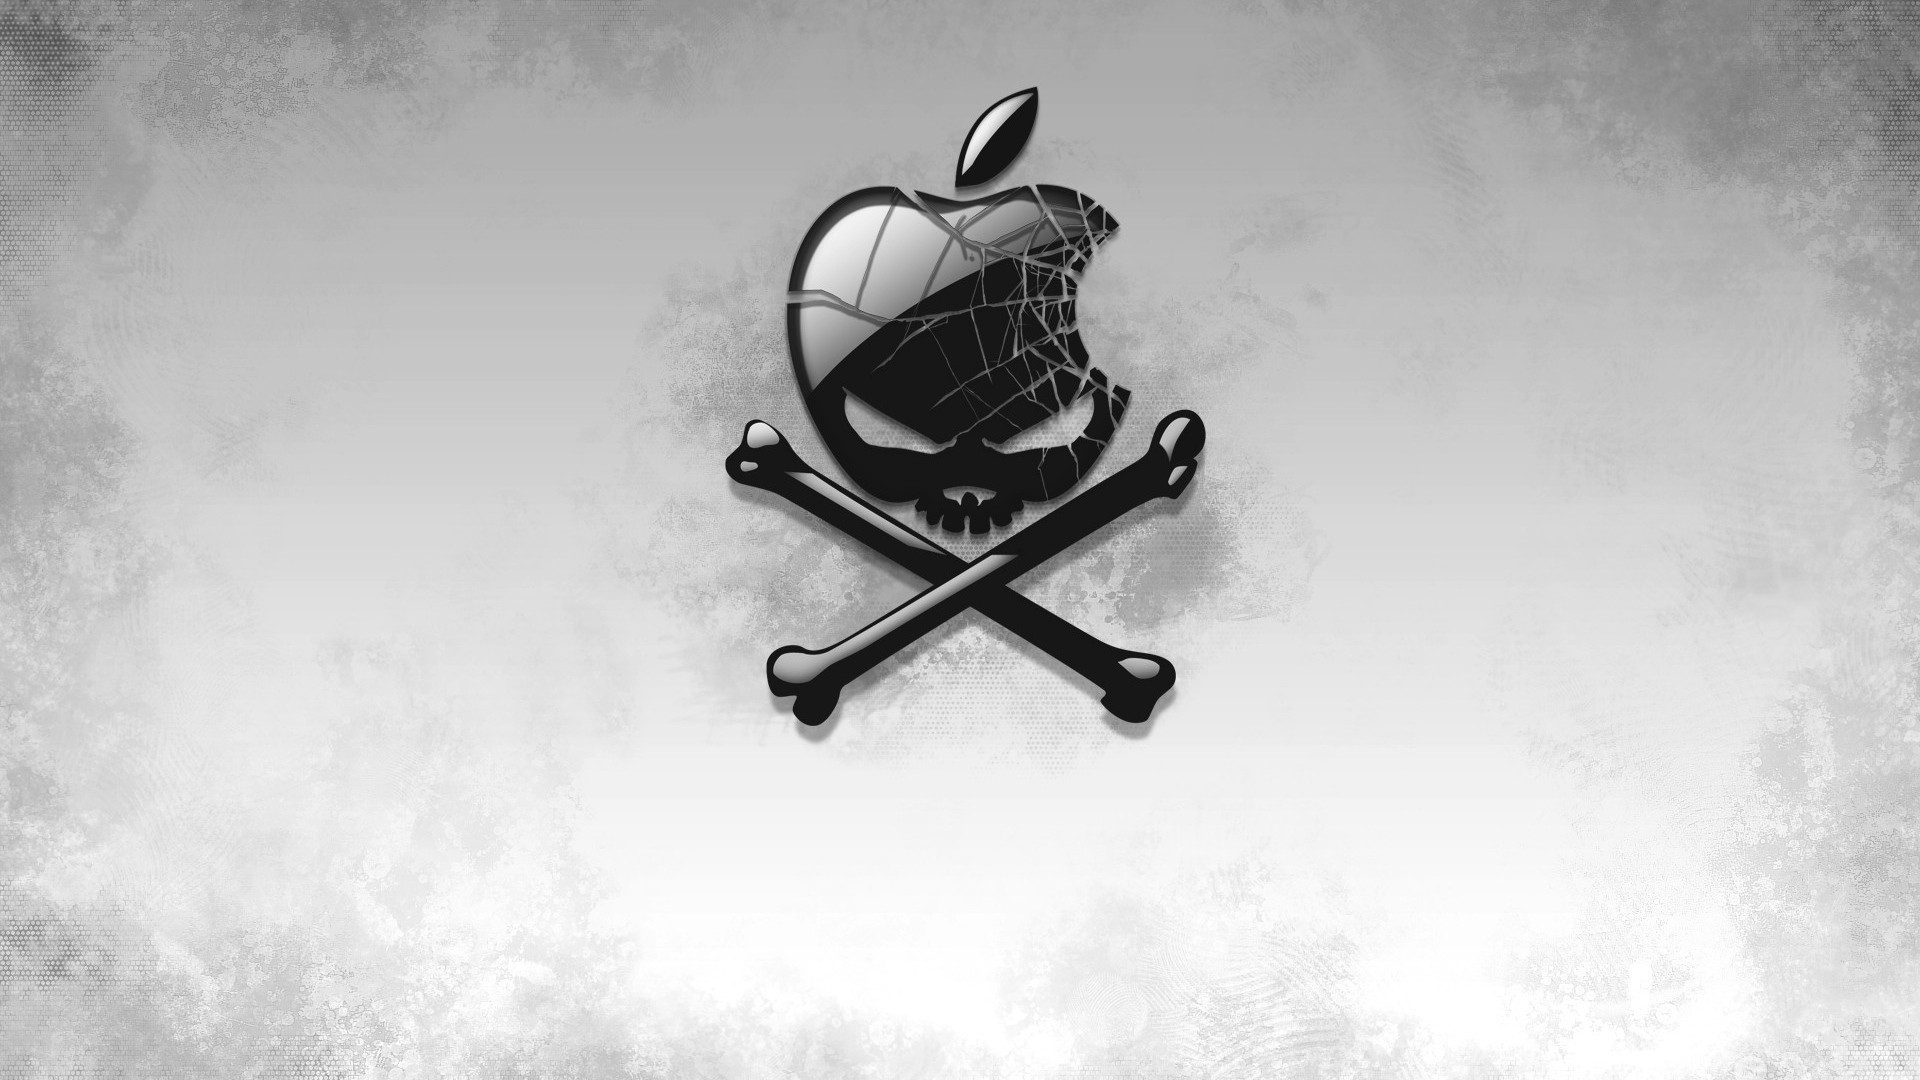 1920x1080 ... Background Full HD 1080p.  Wallpaper black, apple, bones, skull